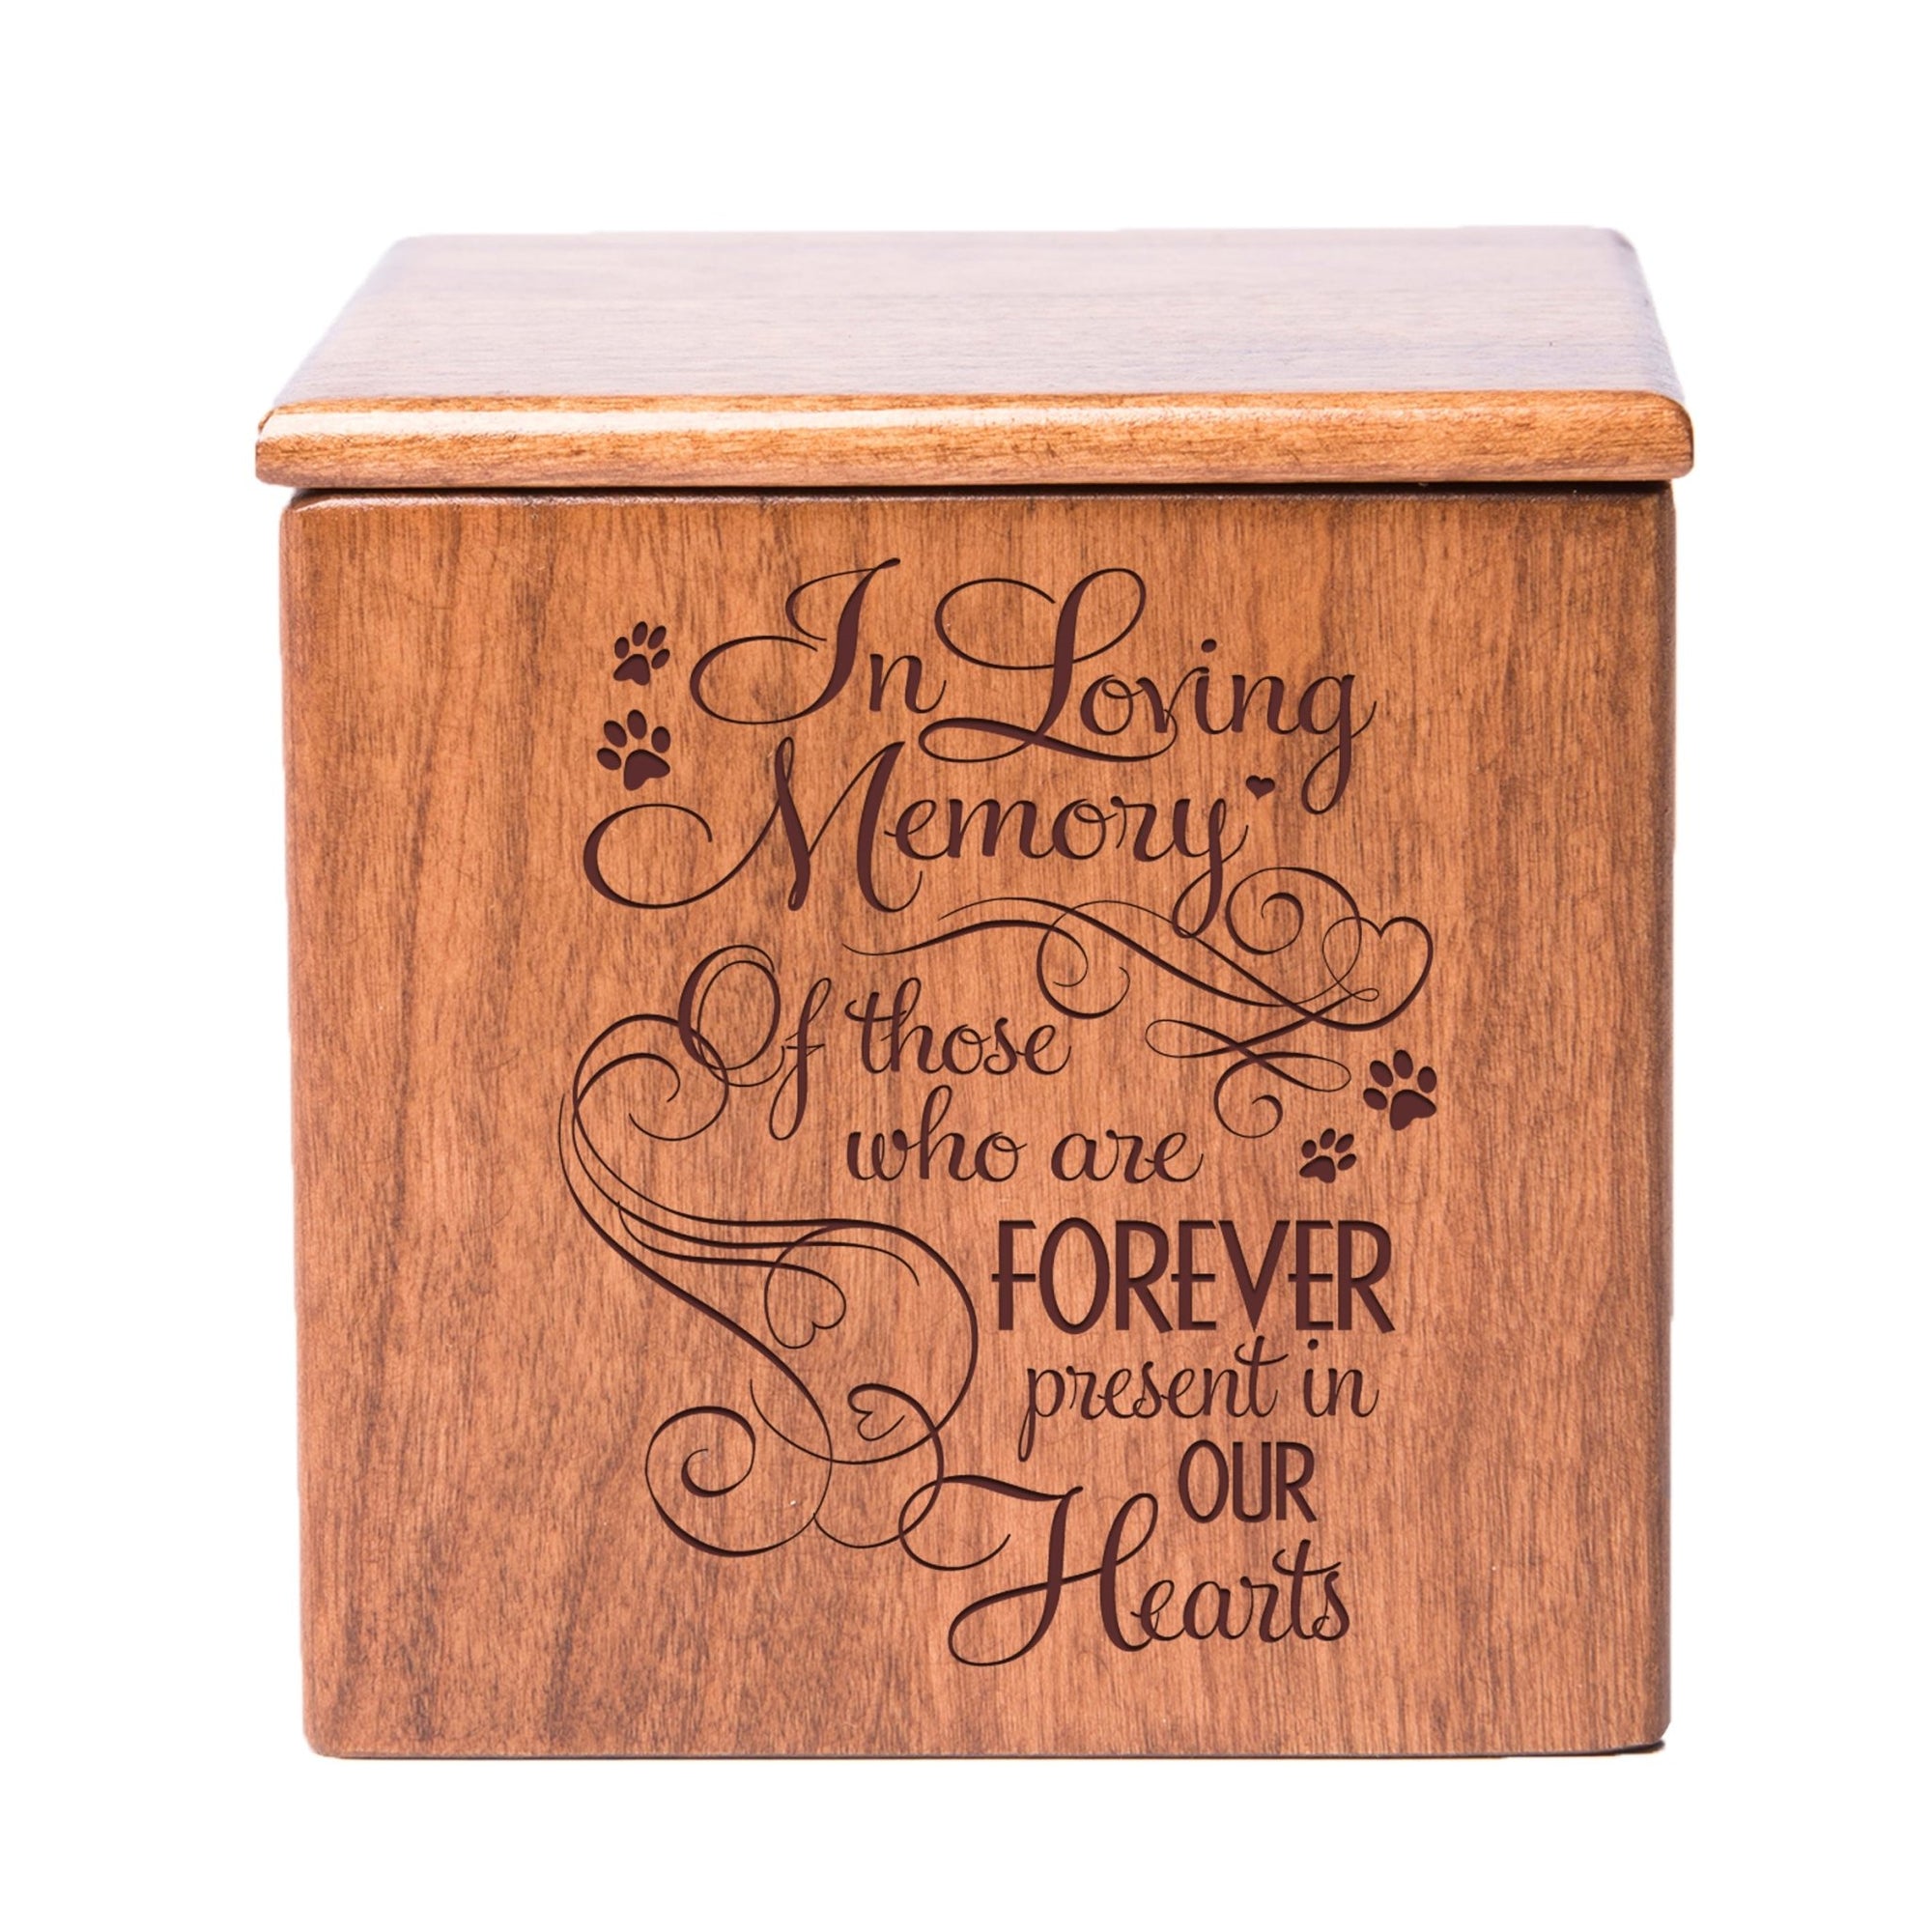 Wooden Memorial Pet Cremation Urn Box - In Loving Memory - LifeSong Milestones